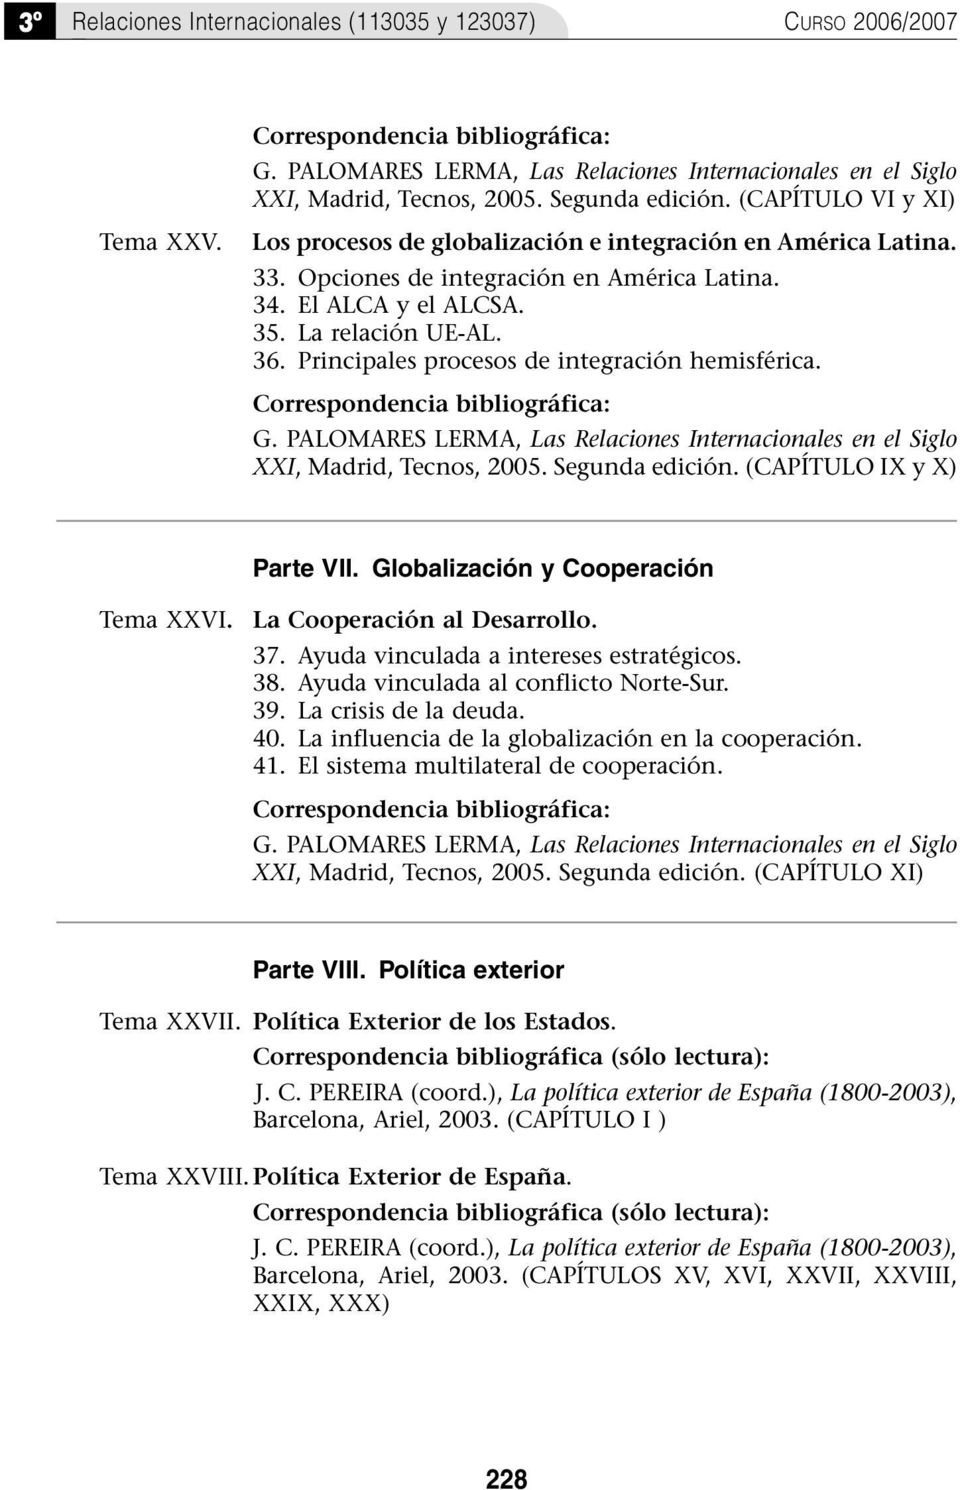 Principales procesos de integración hemisférica. G. PALOMARES LERMA, Las Relaciones Internacionales en el Siglo XXI, Madrid, Tecnos, 2005. Segunda edición. (CAPÍTULO IX y X) Parte VII.